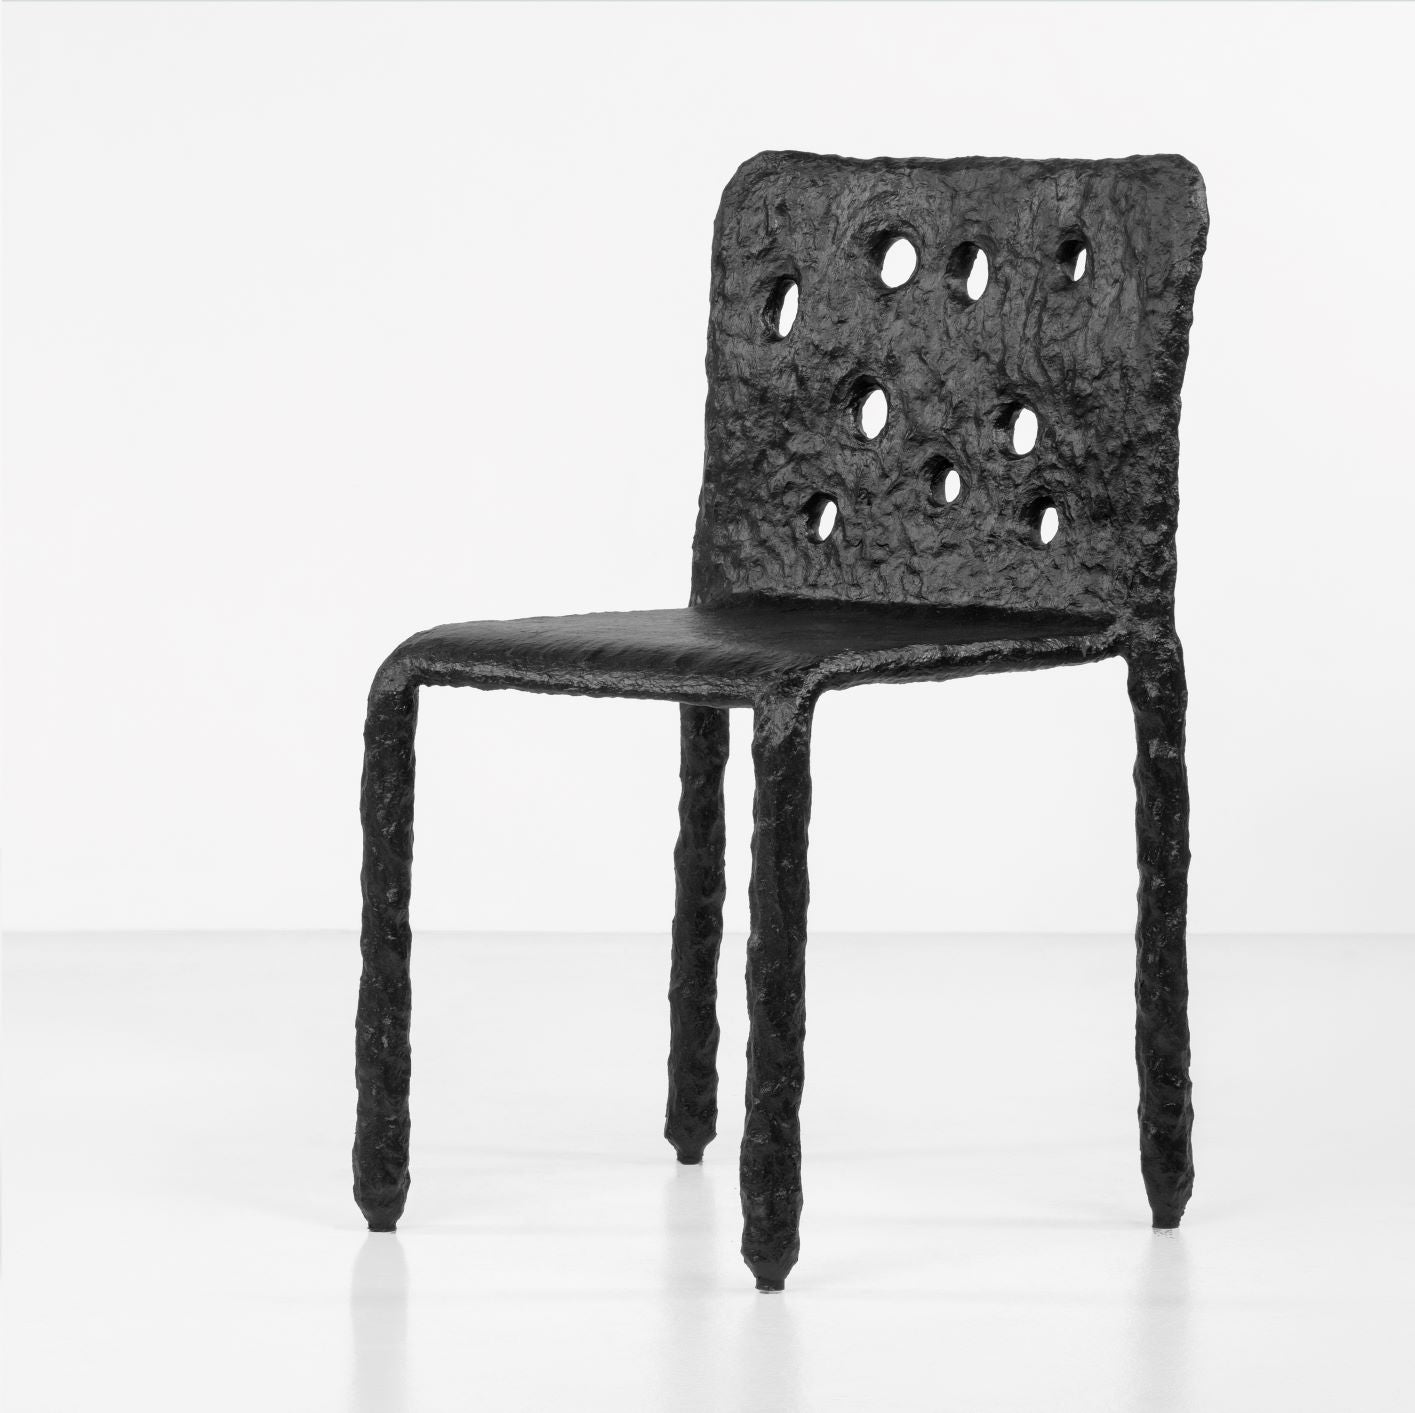 ZTISTA chair in black